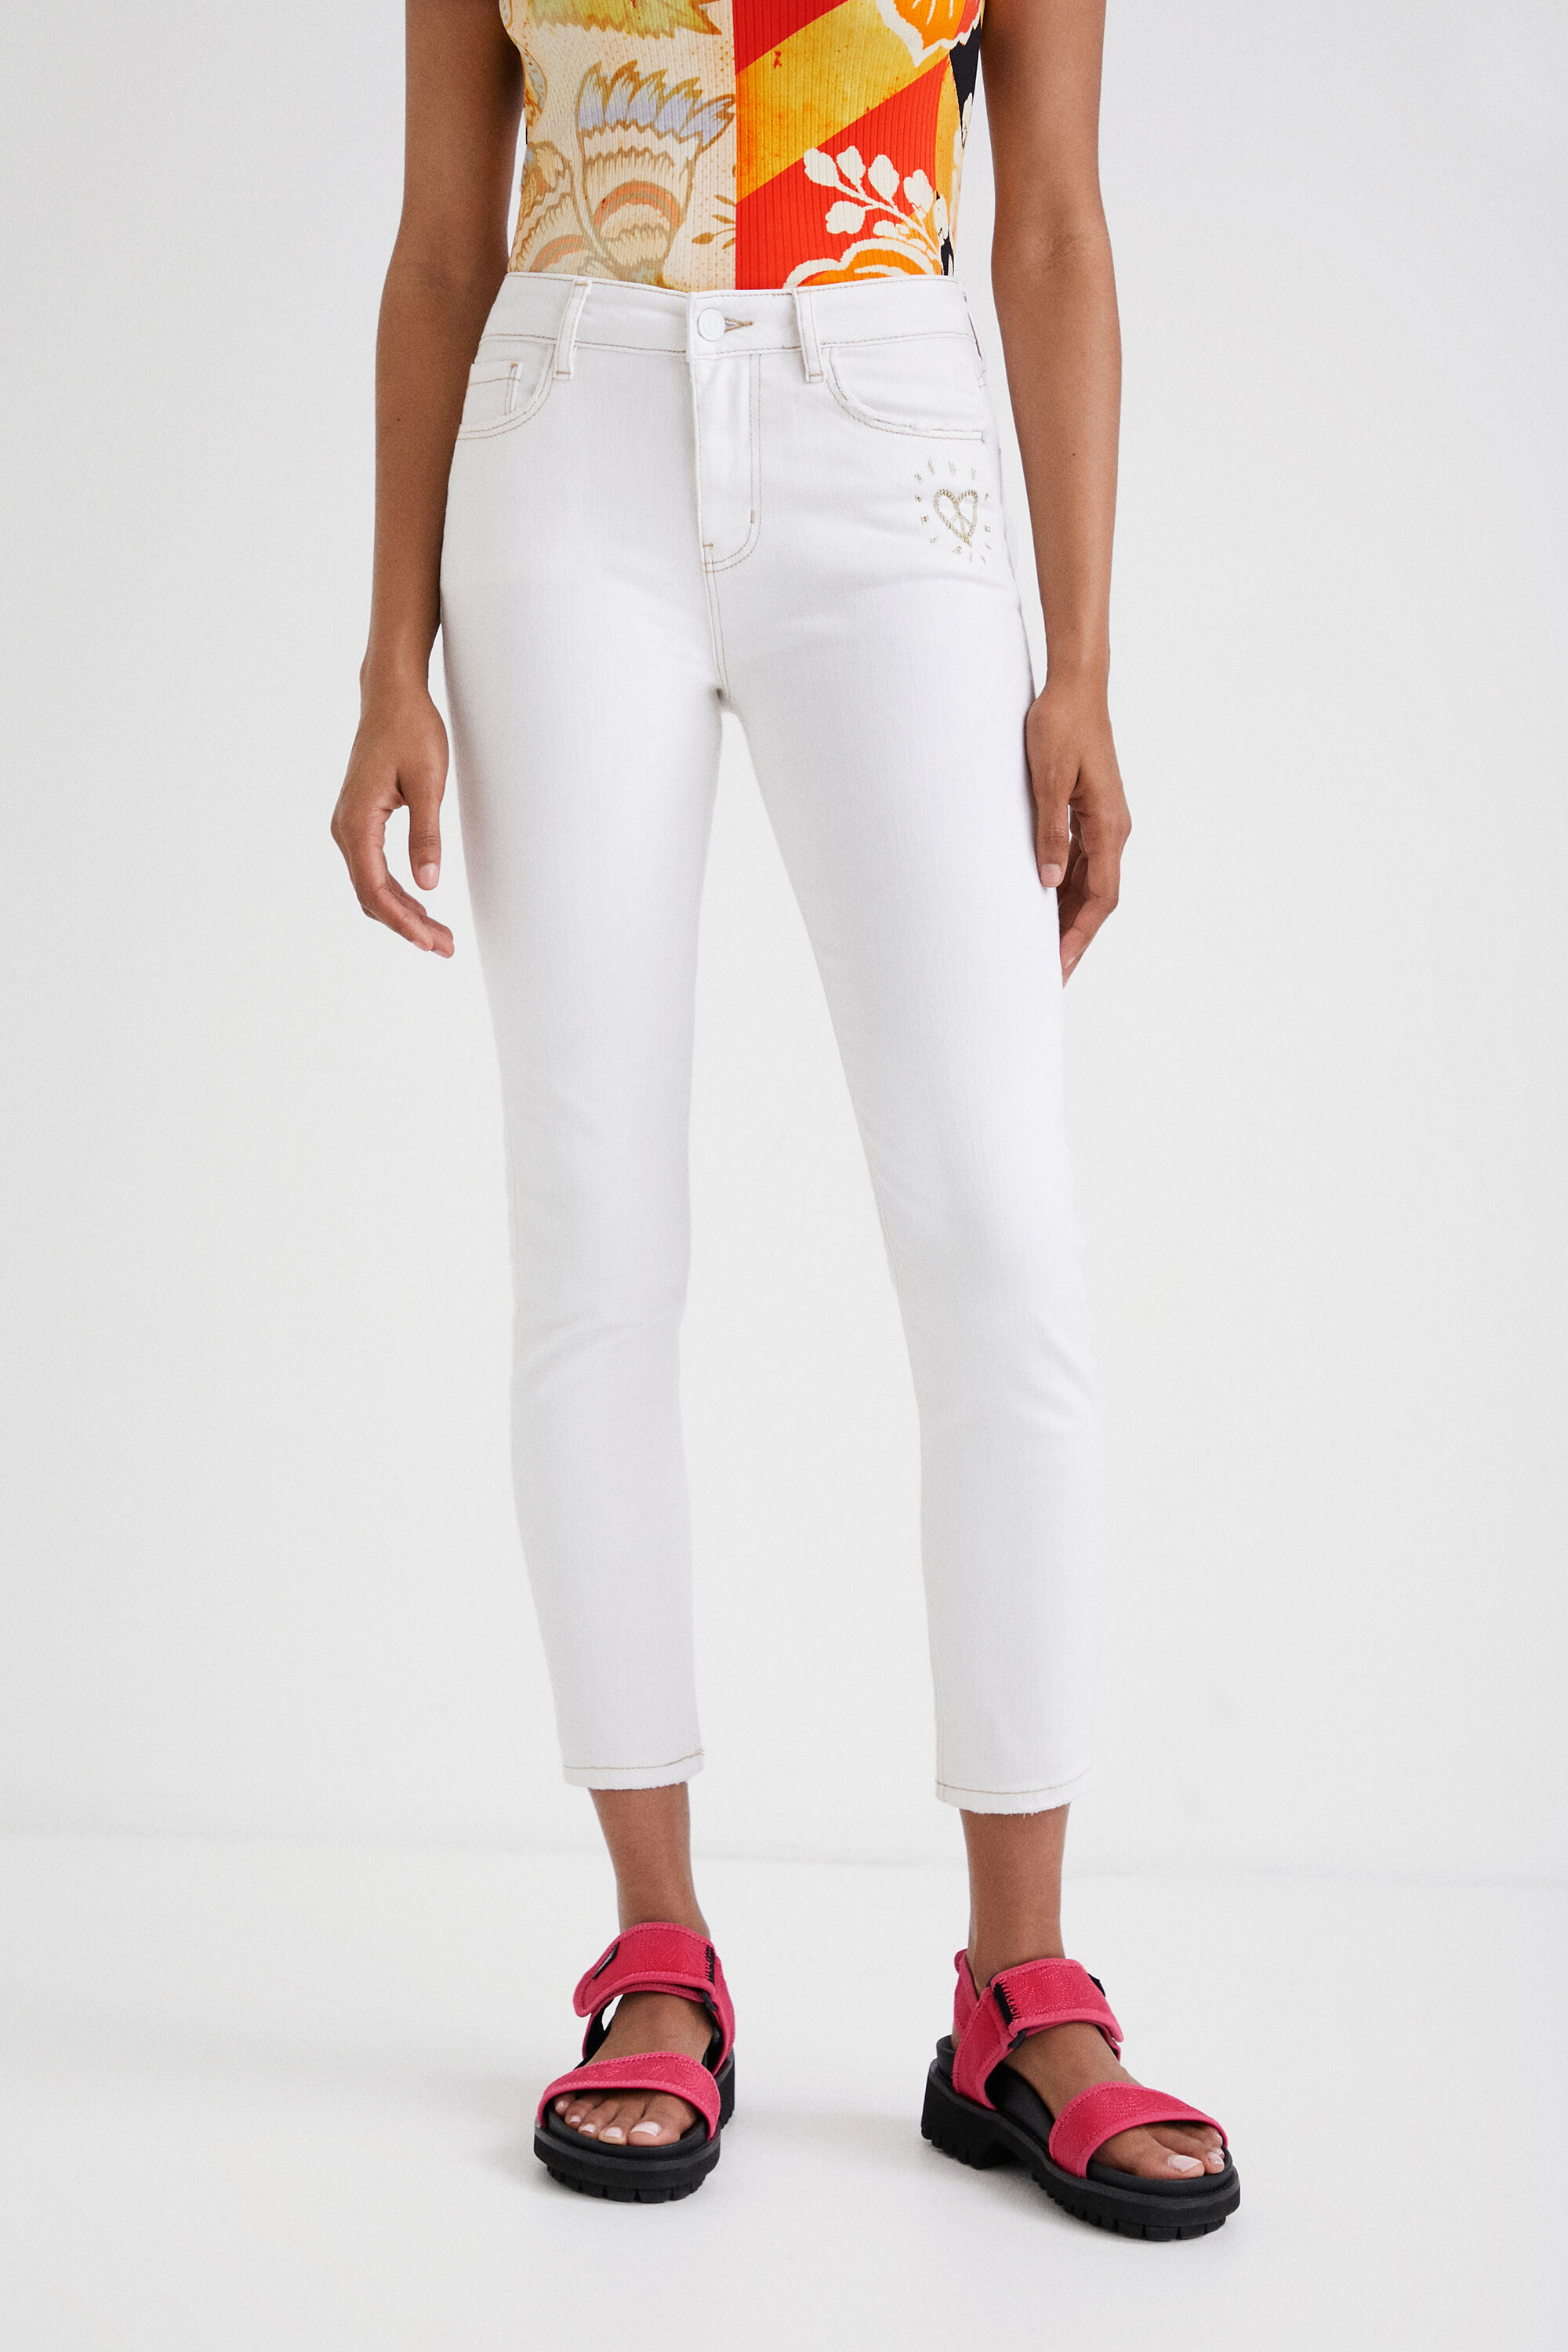 Hosen - Skinny Jeans mit Herz  - Onlineshop Desigual